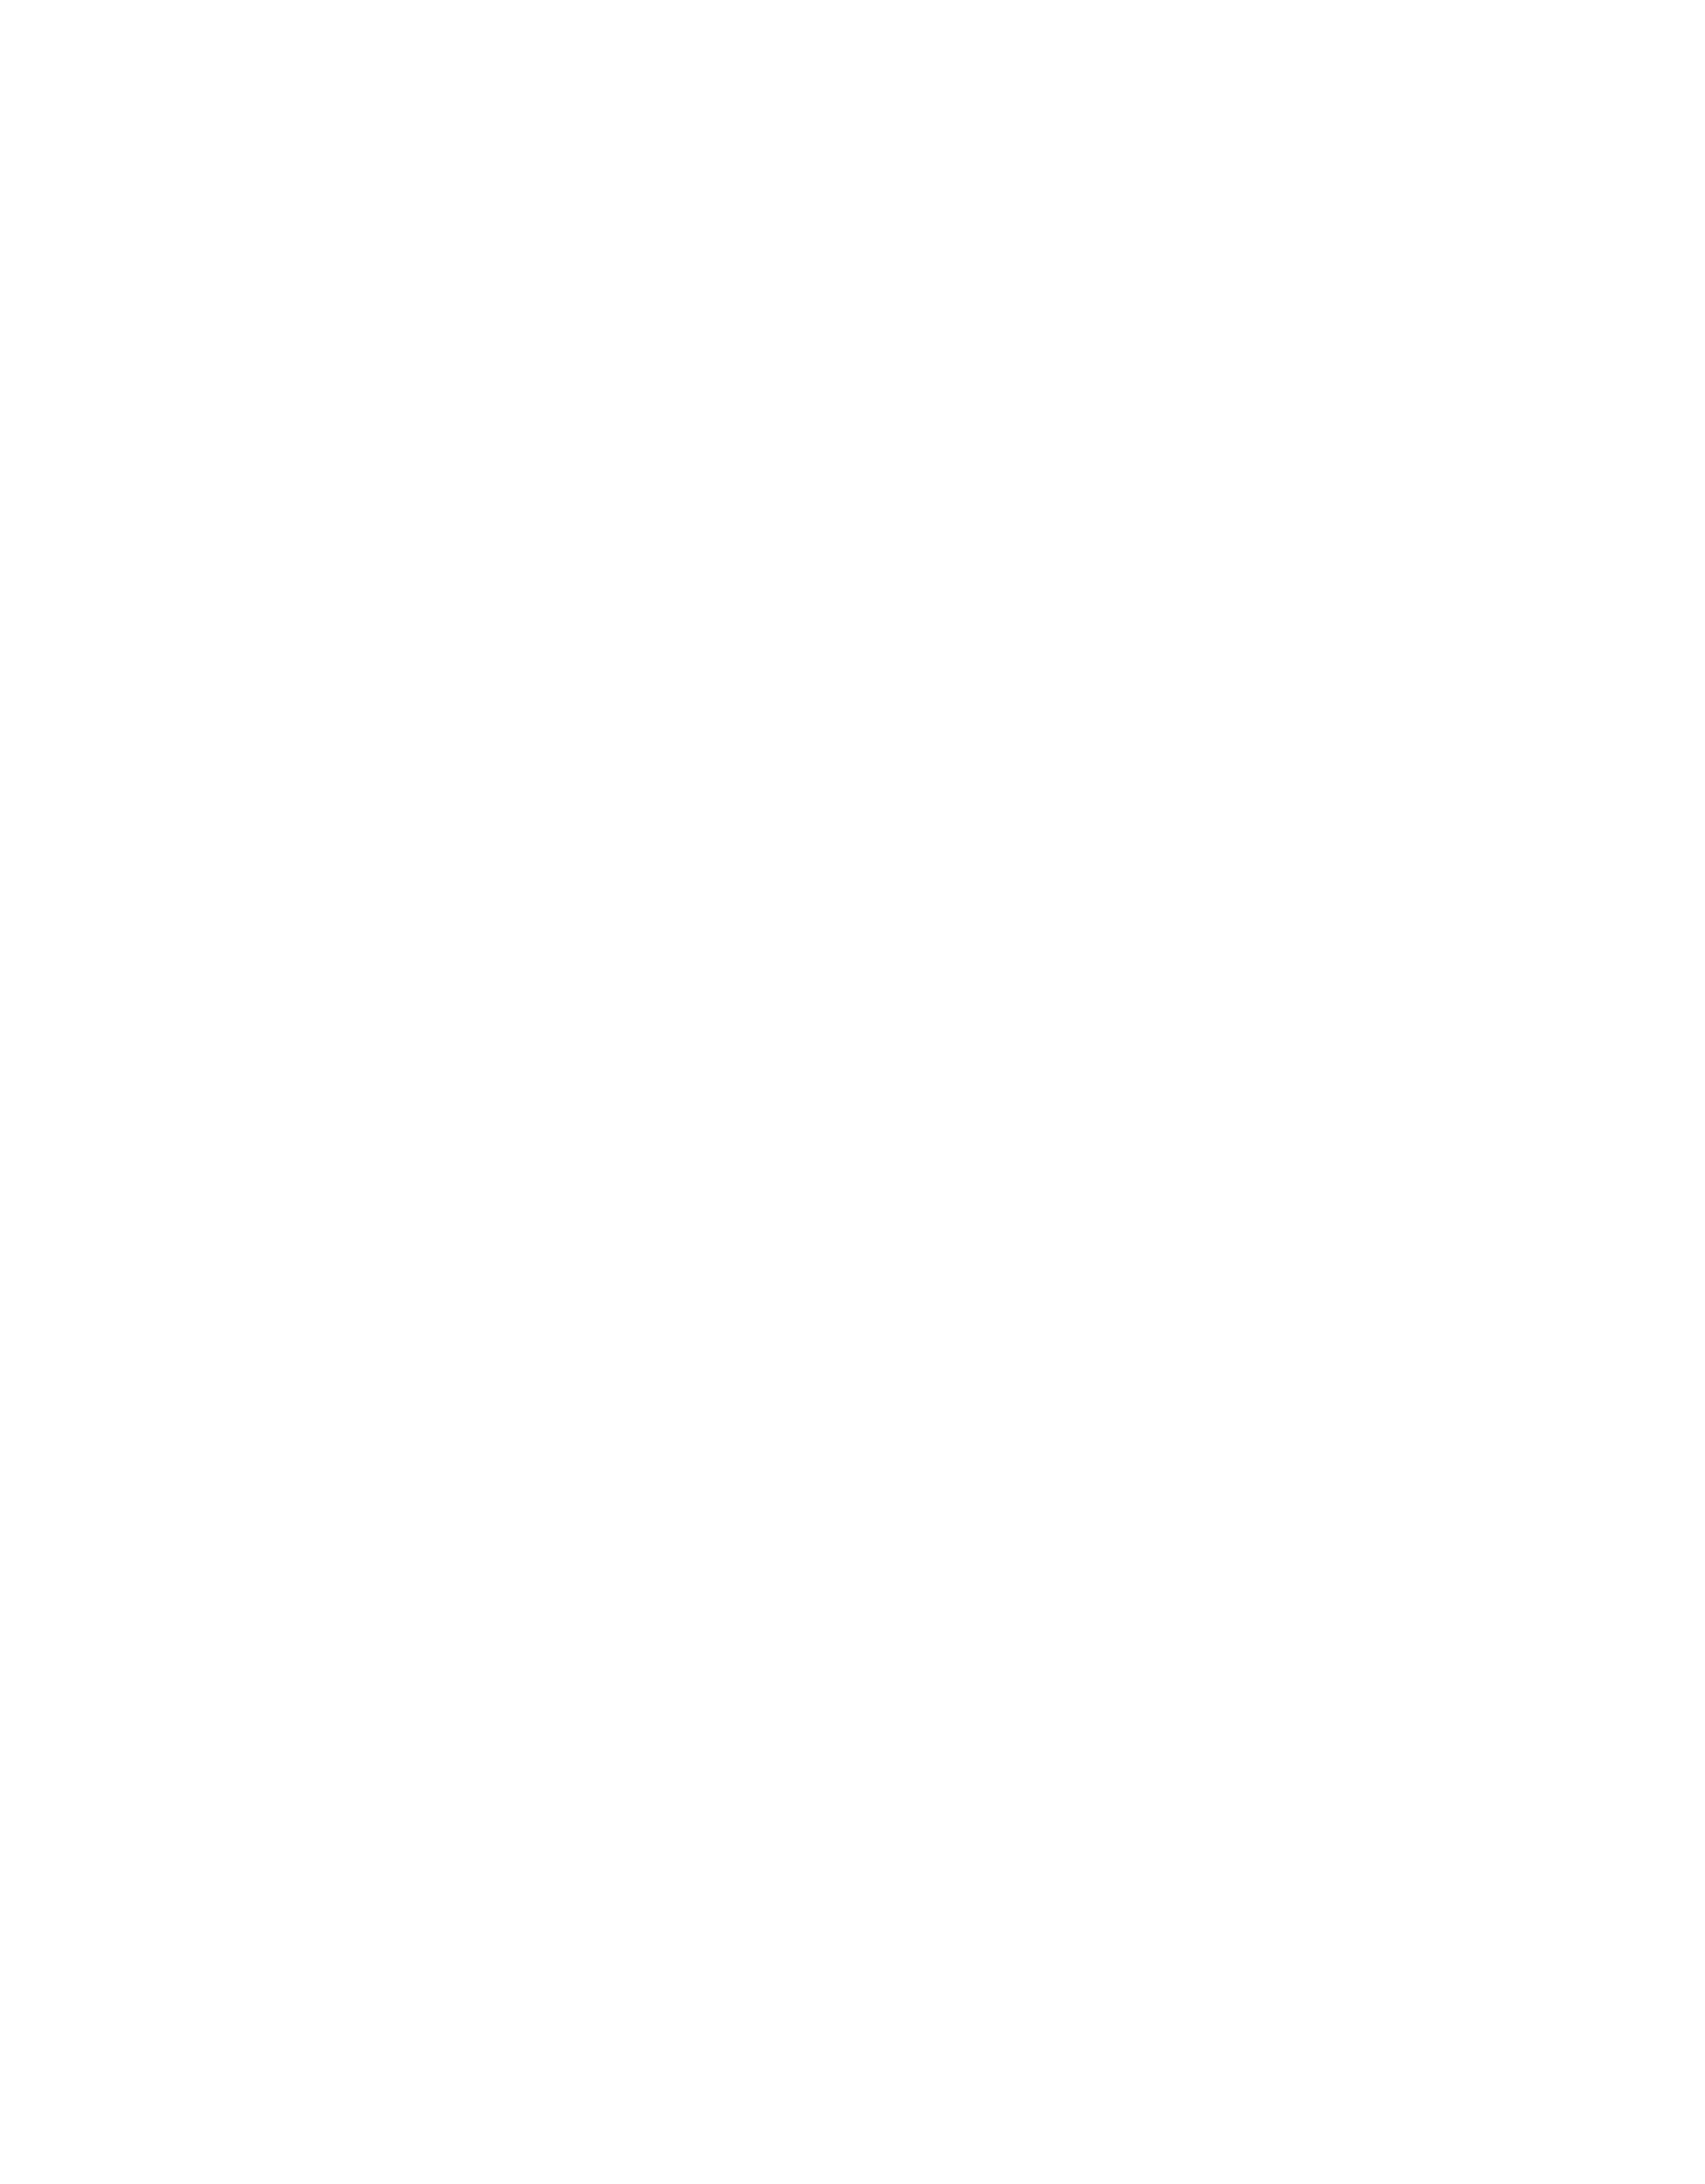 My Happy Pantry